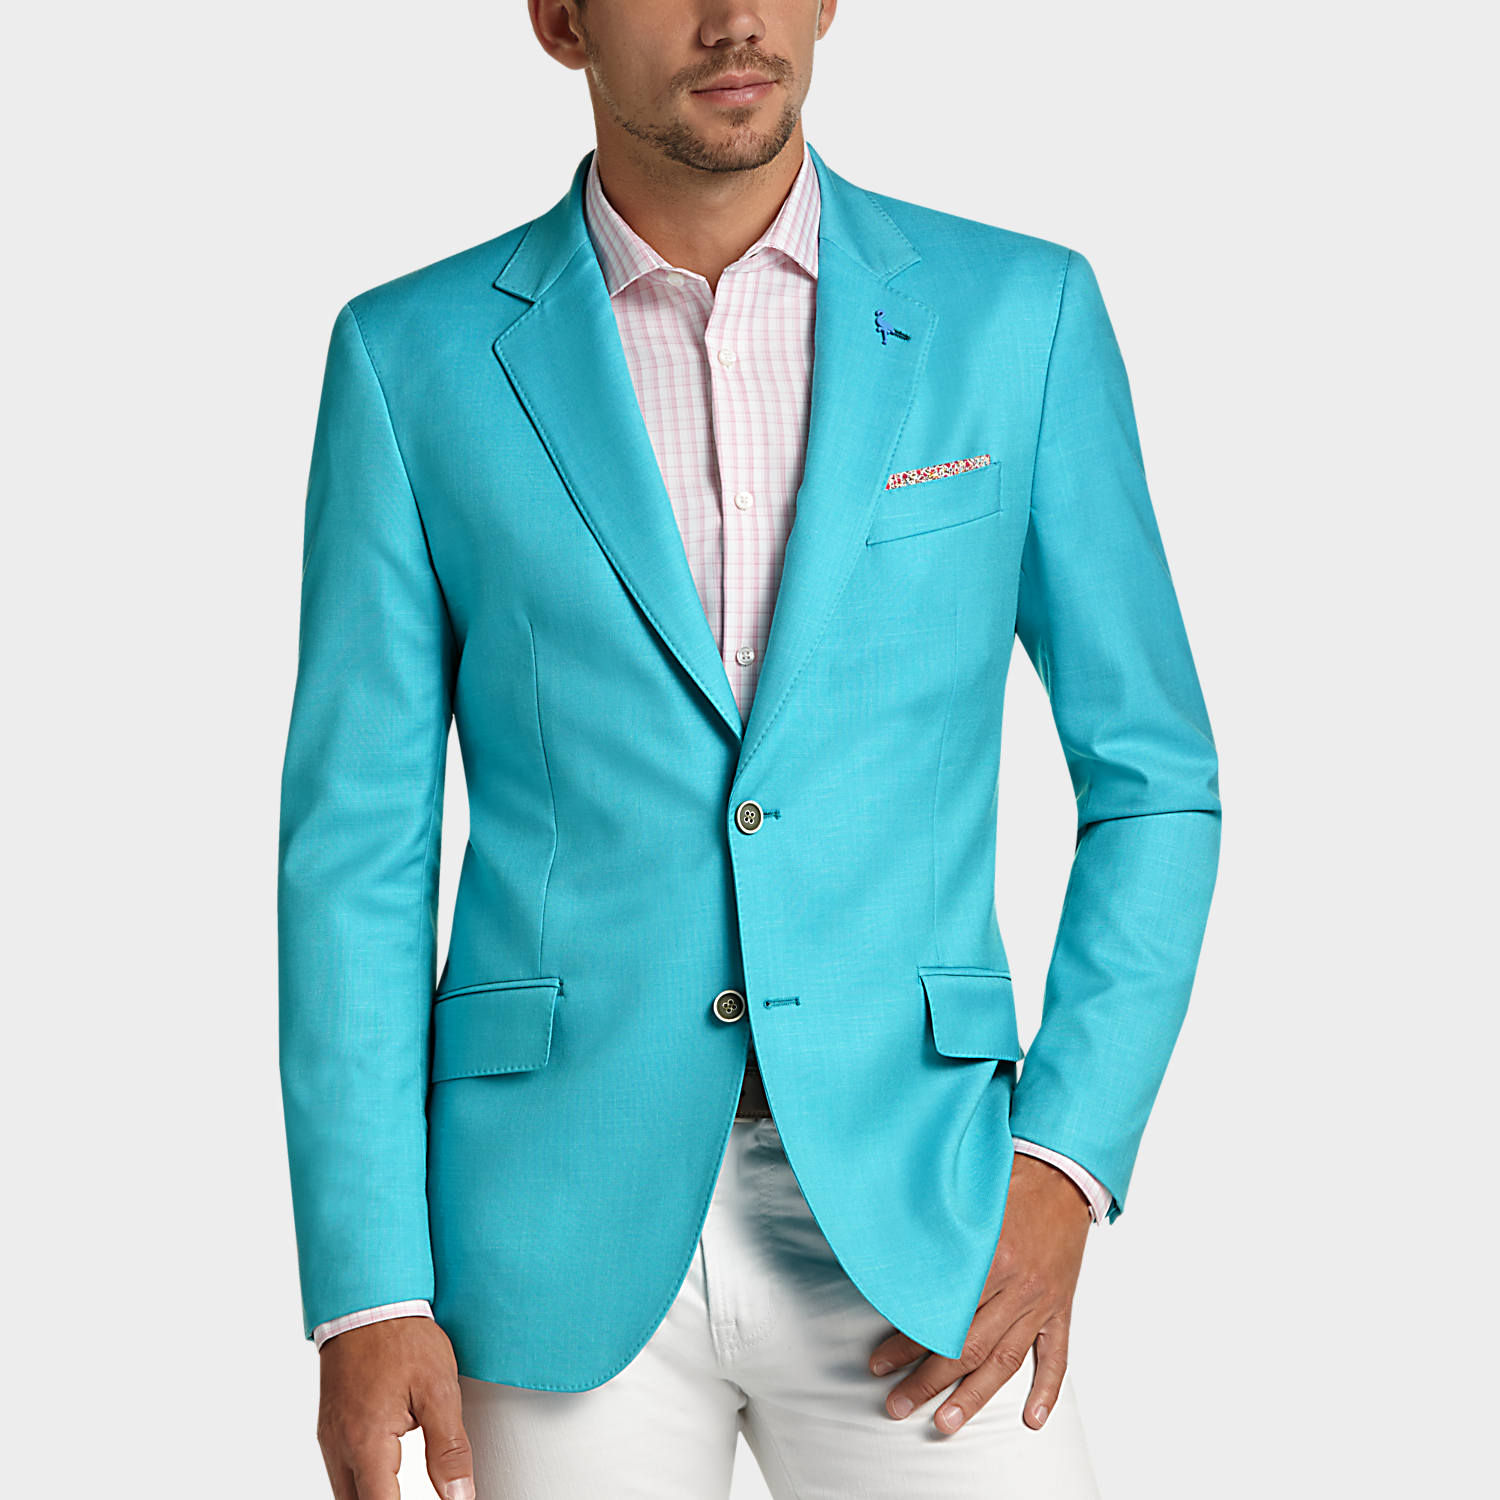 Sport Coats - Shop Top Designer Sport Jackets & Coats | Men's ...